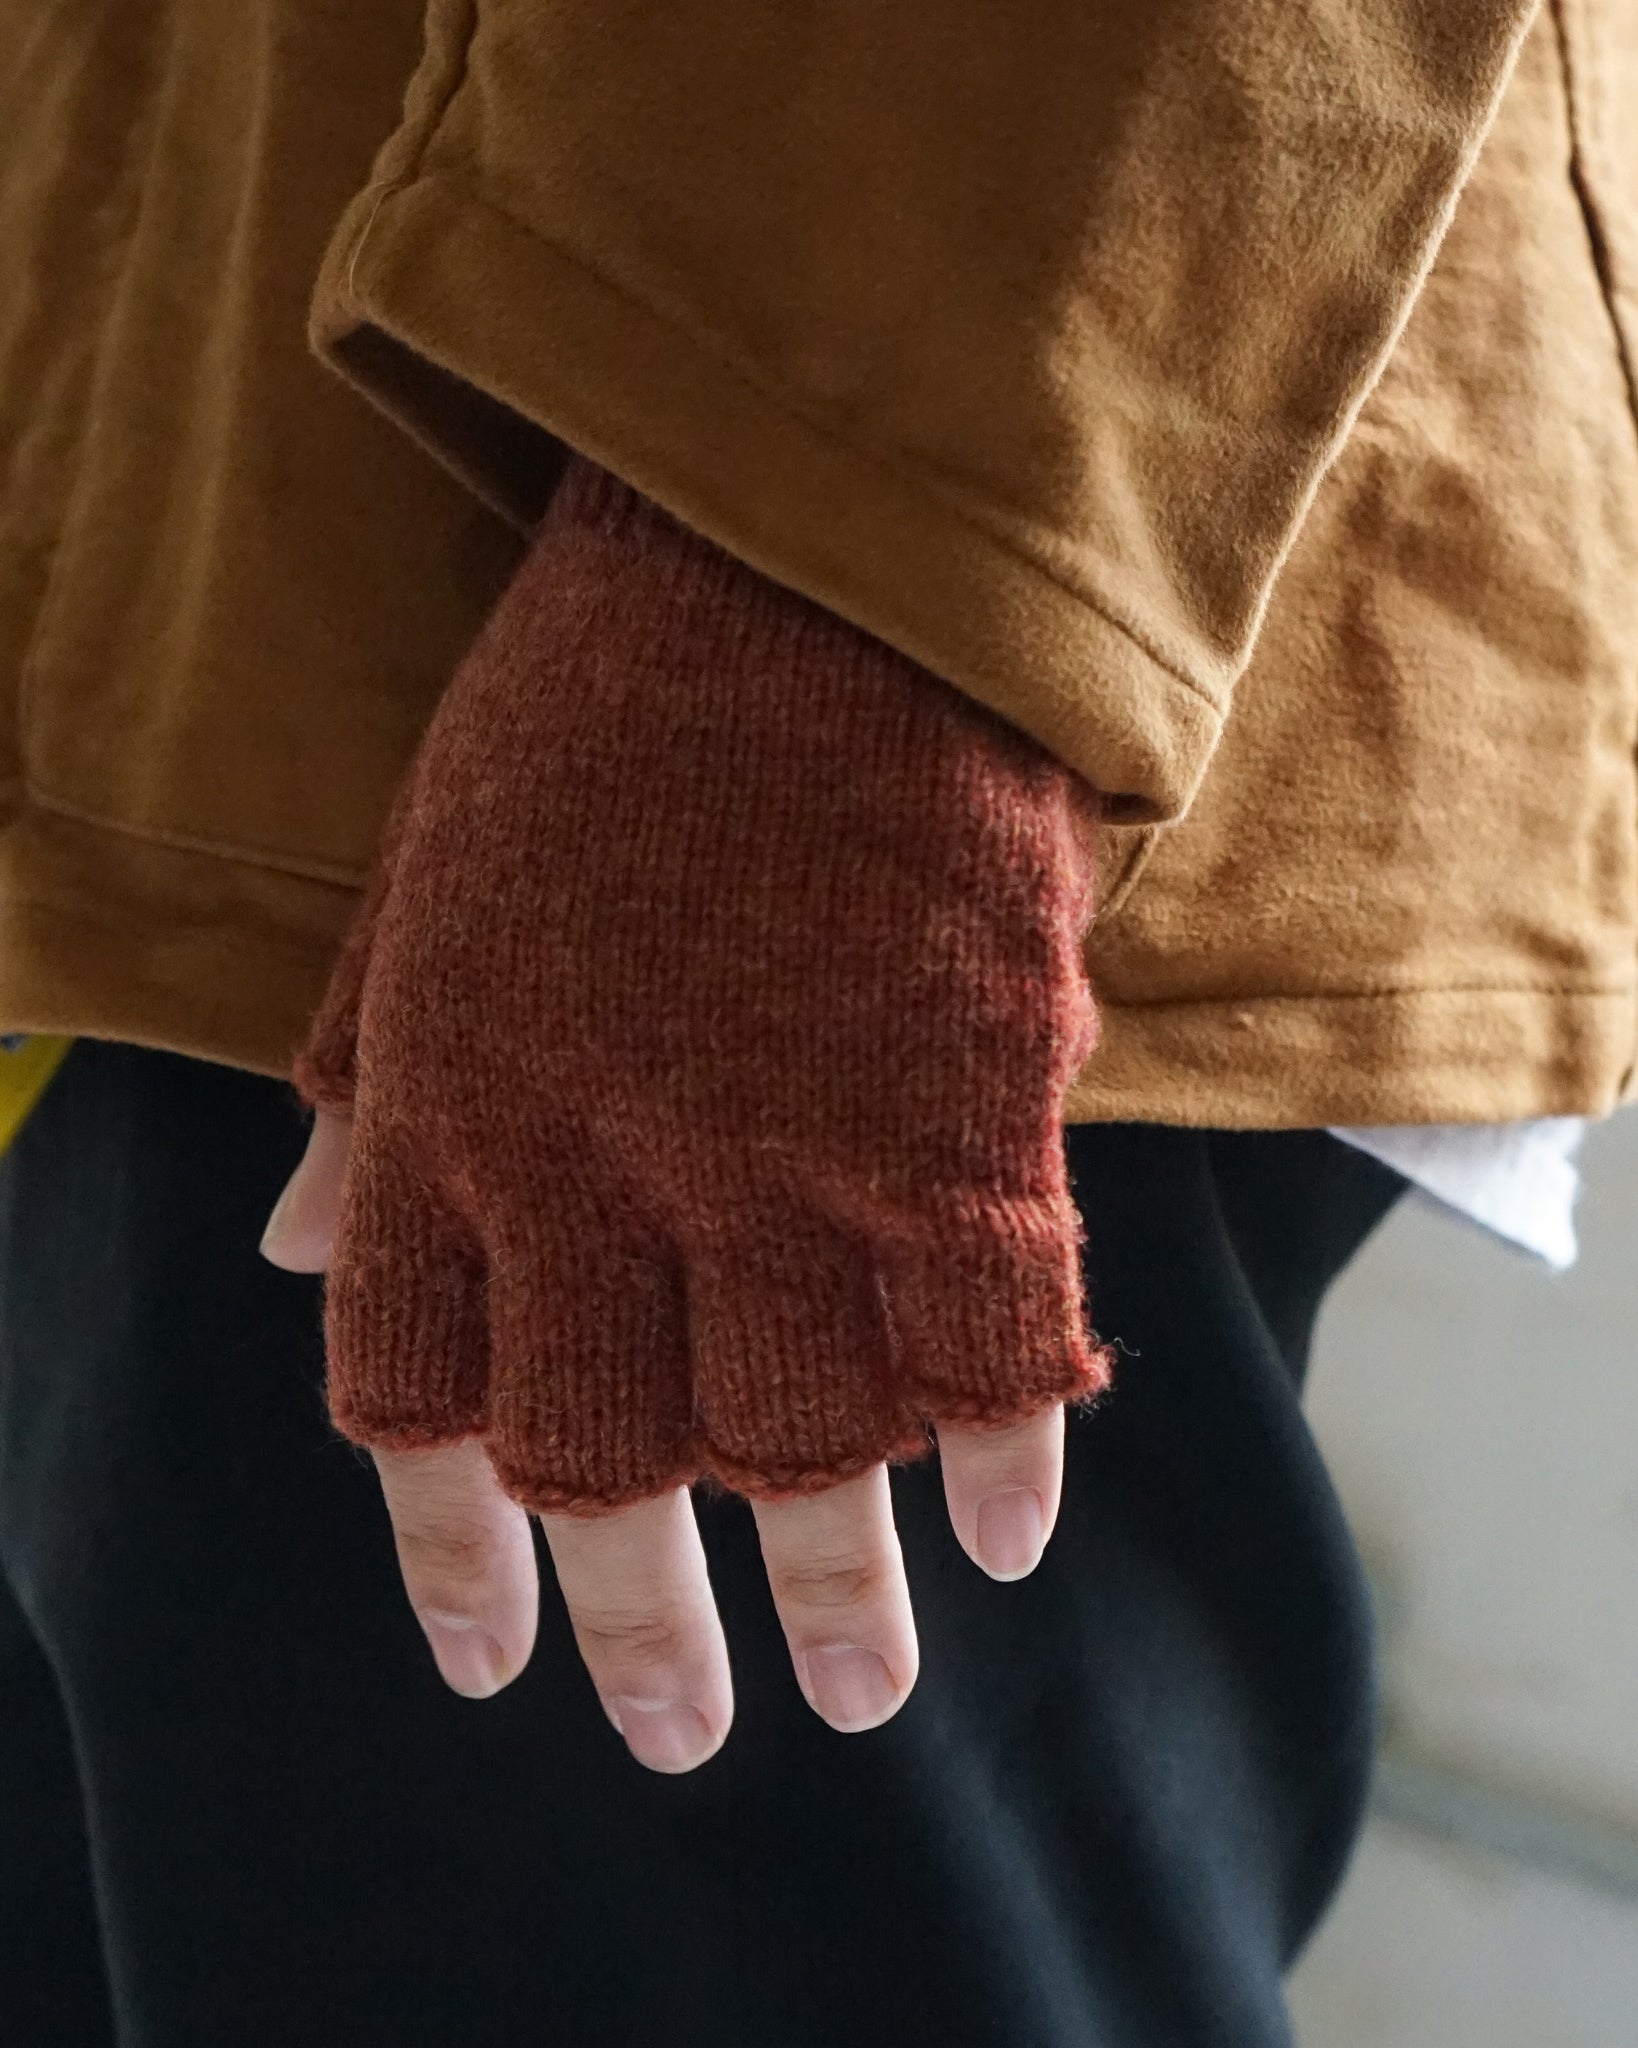 Shetland Wool Fingerless Gloves